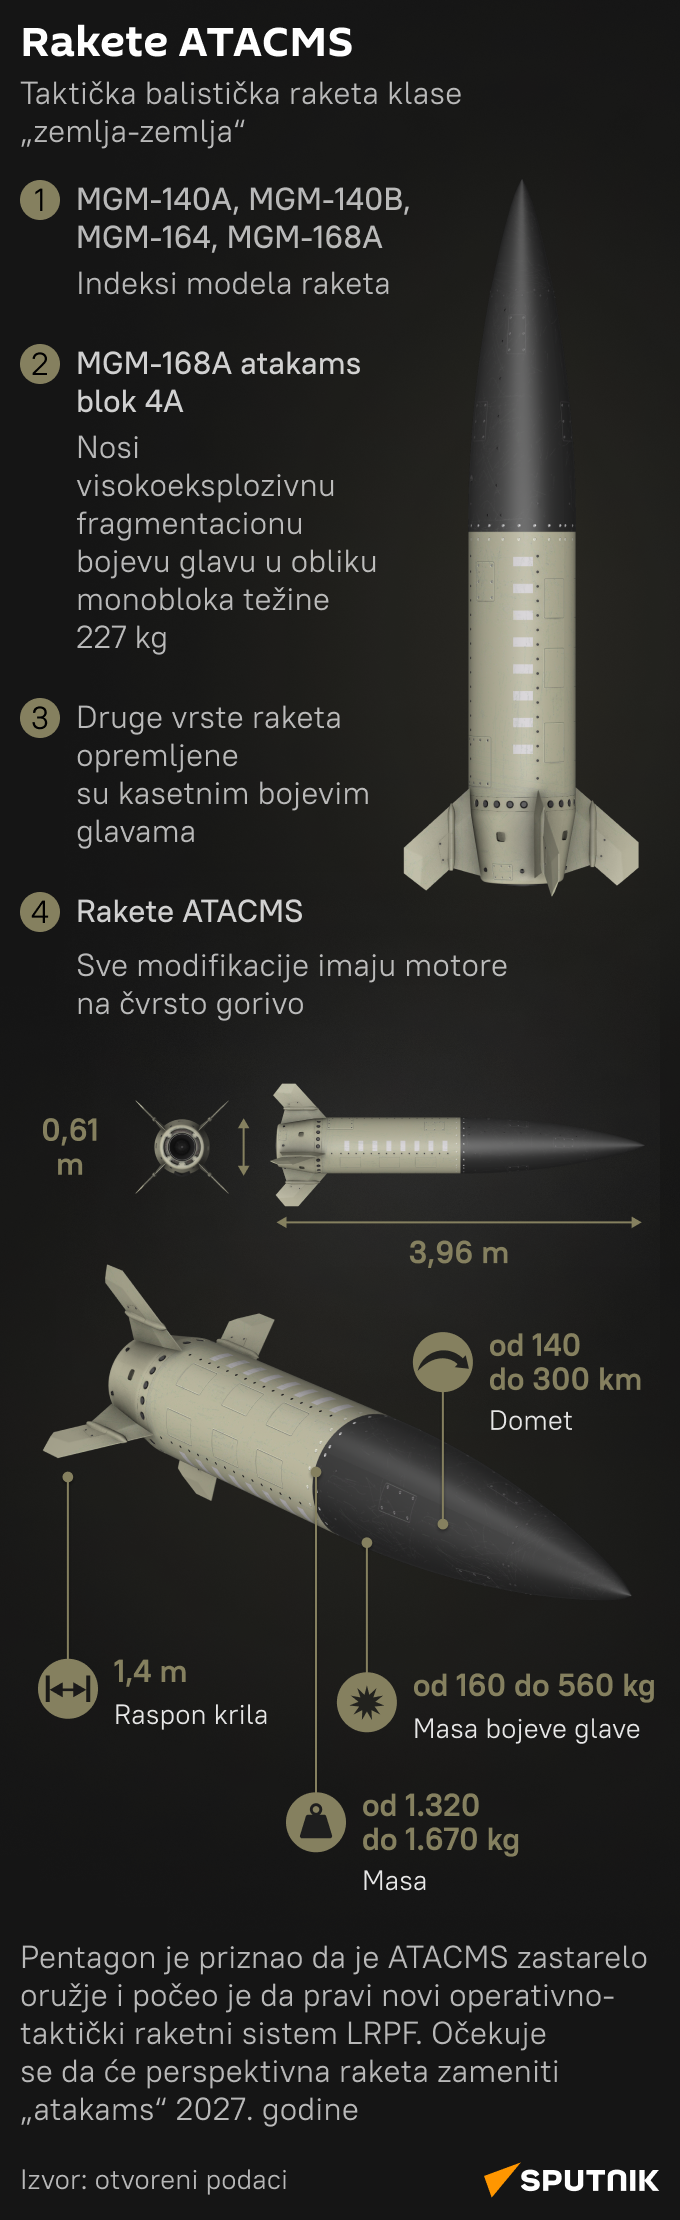 Infografika Rakete ATACMS LATINICA mob - Sputnik Srbija